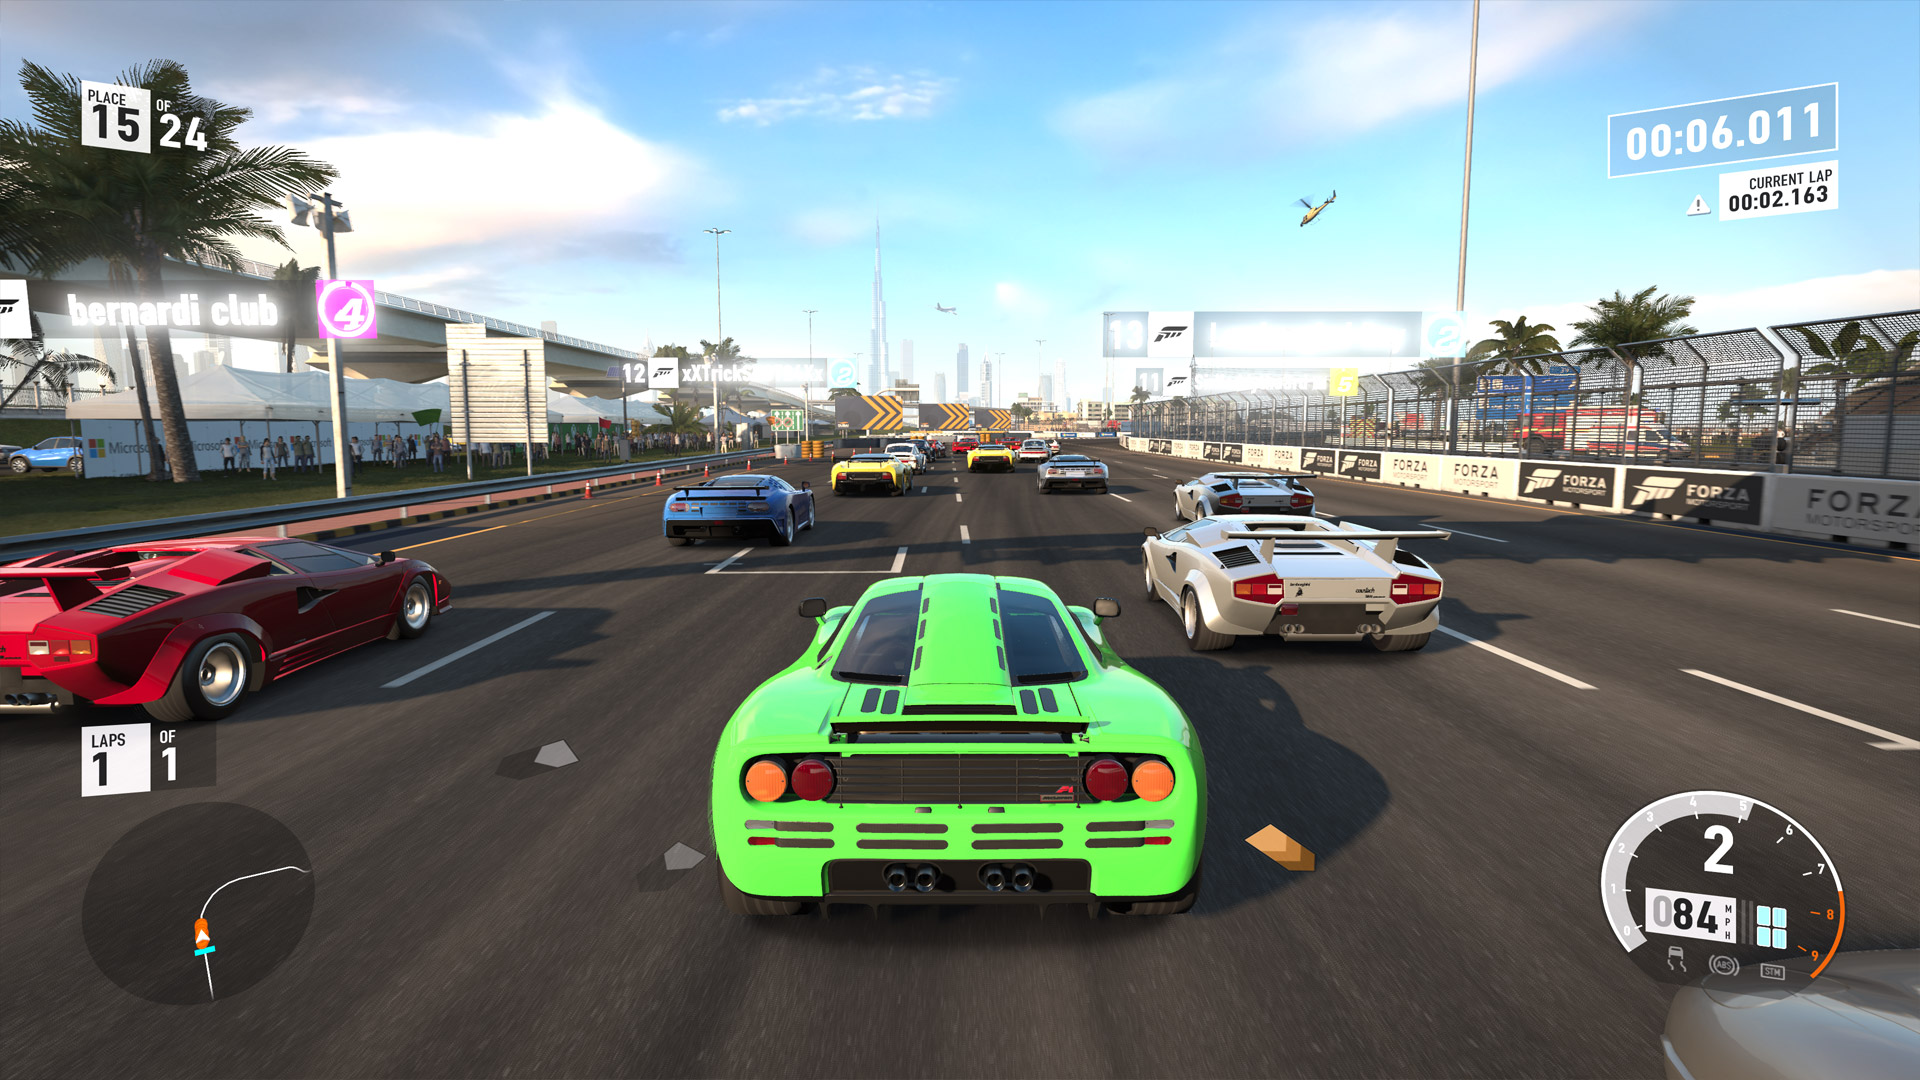 geweer Gezond eten zondaar Forza Motorsport 7 Xbox One X Enhanced Impressions - Gamerheadquarters